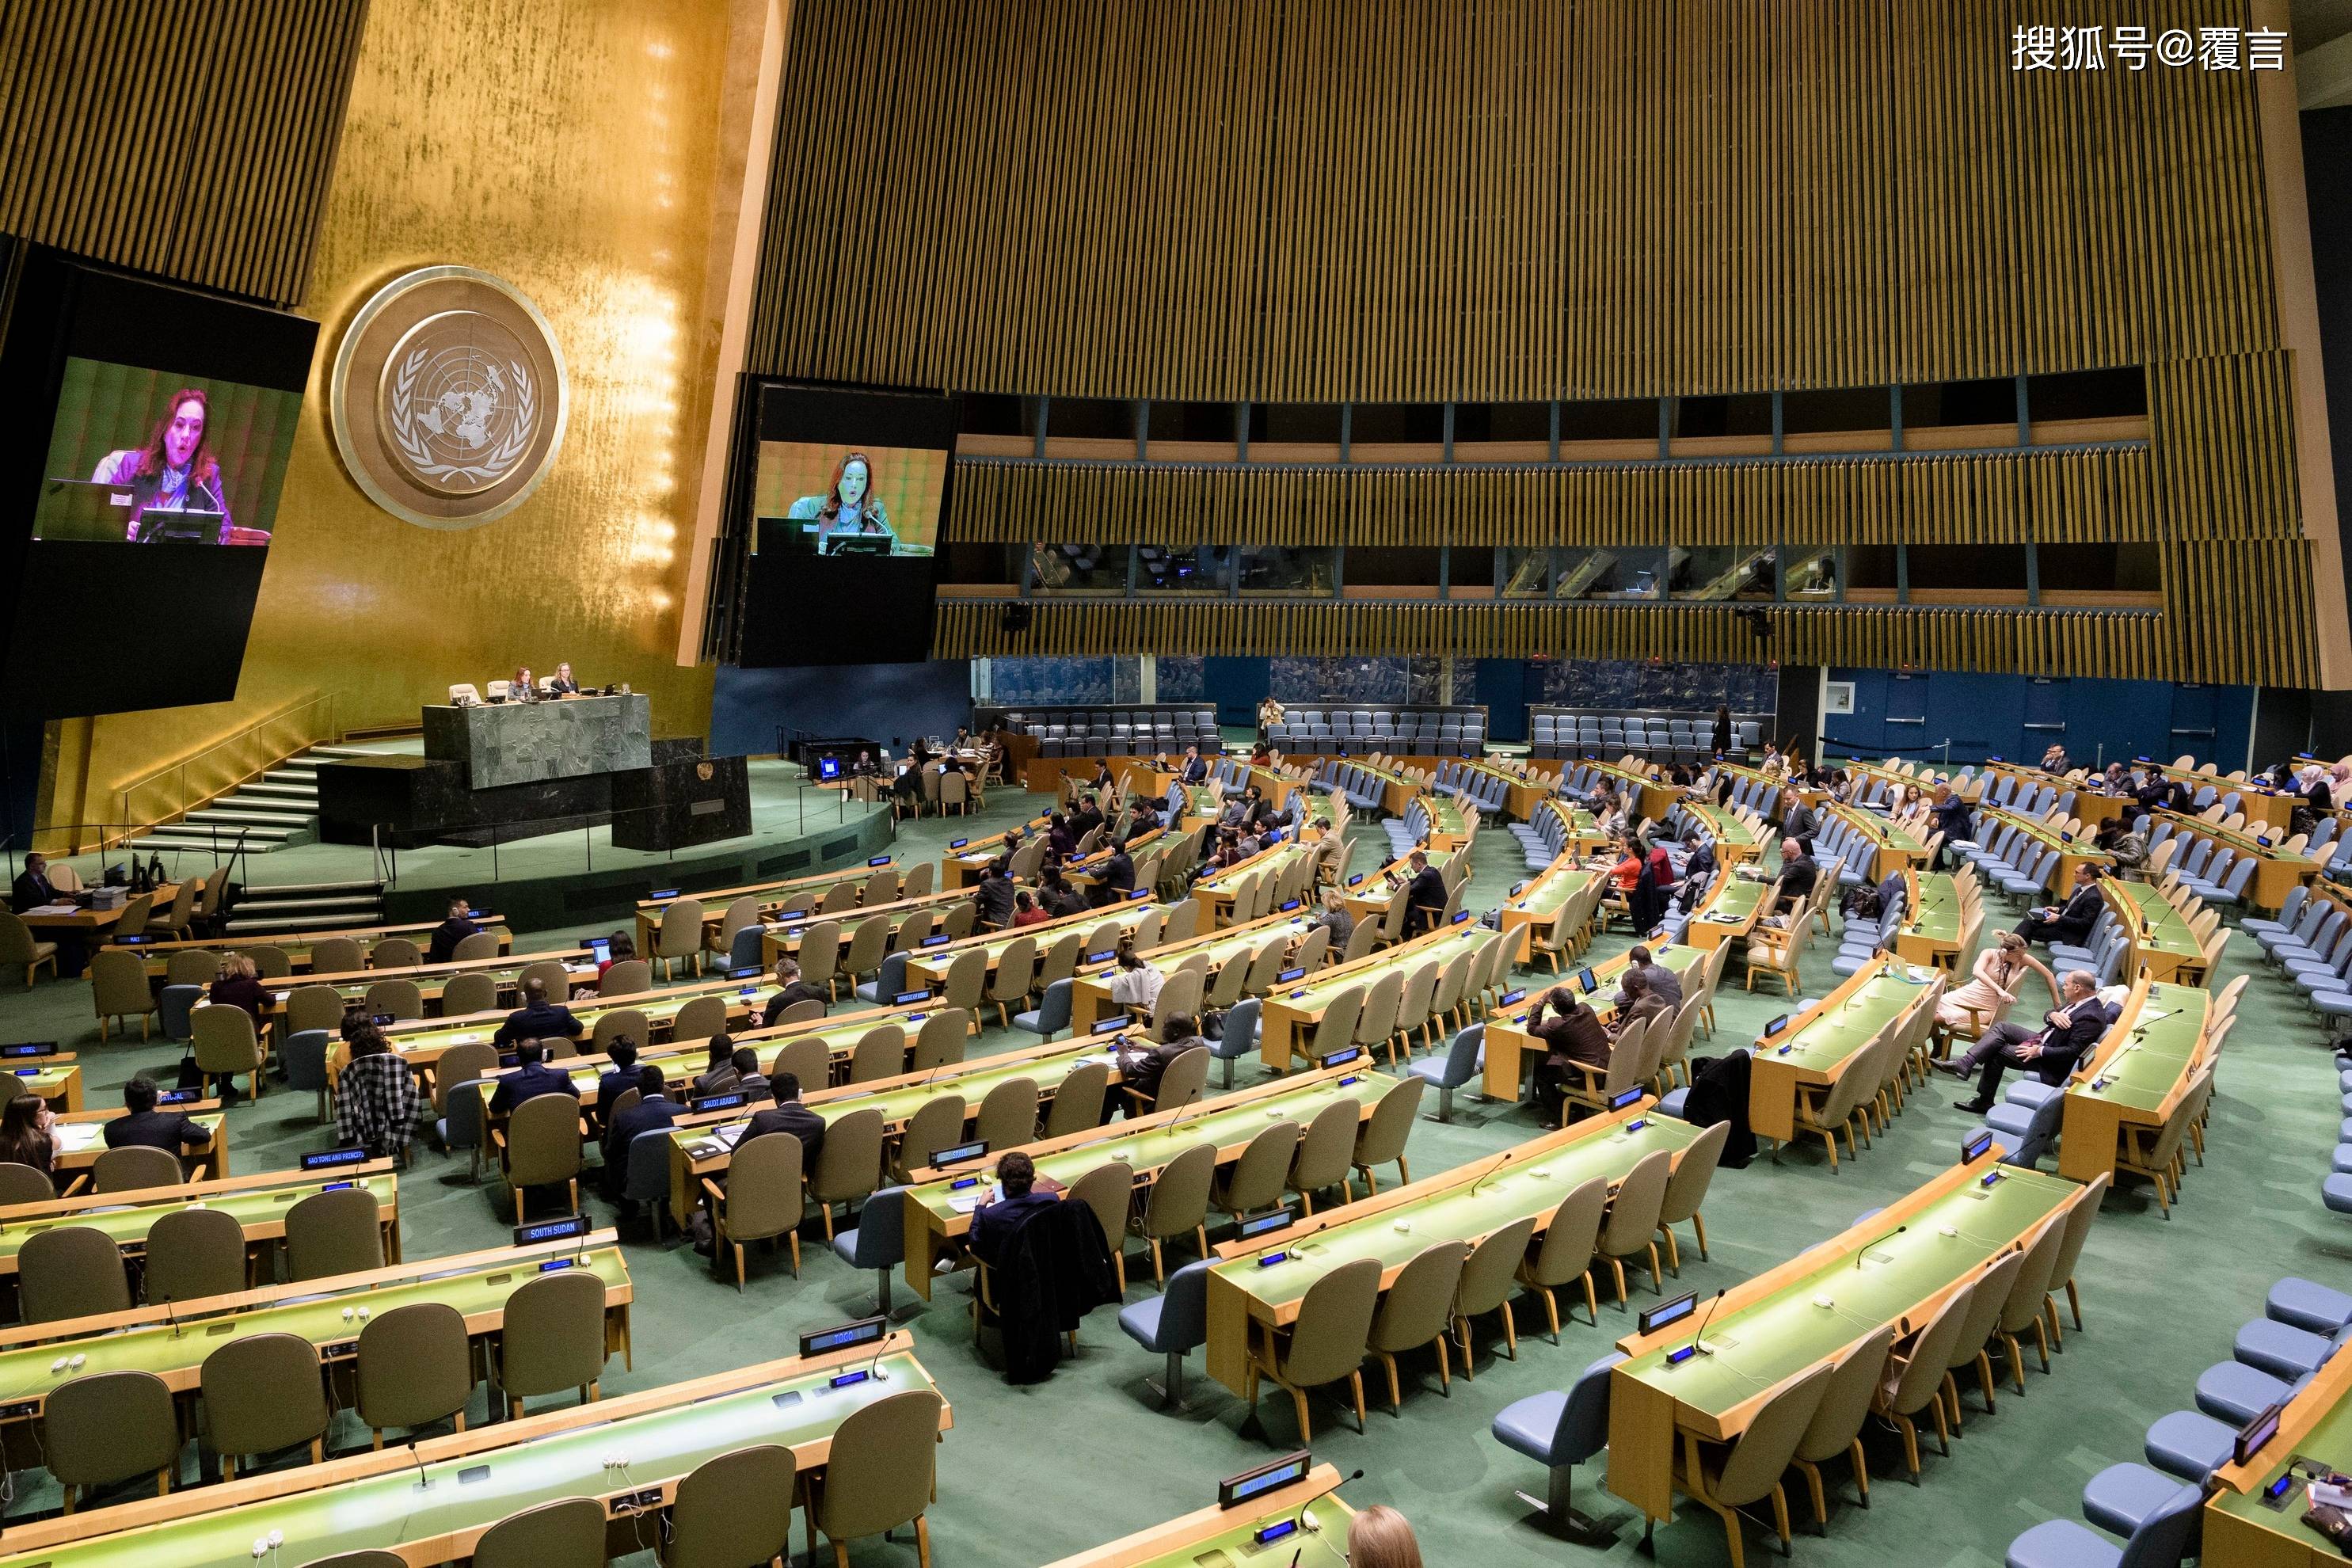 联合国大会紧急特别会议通过乌克兰局势决议草案-青报网-青岛日报官网